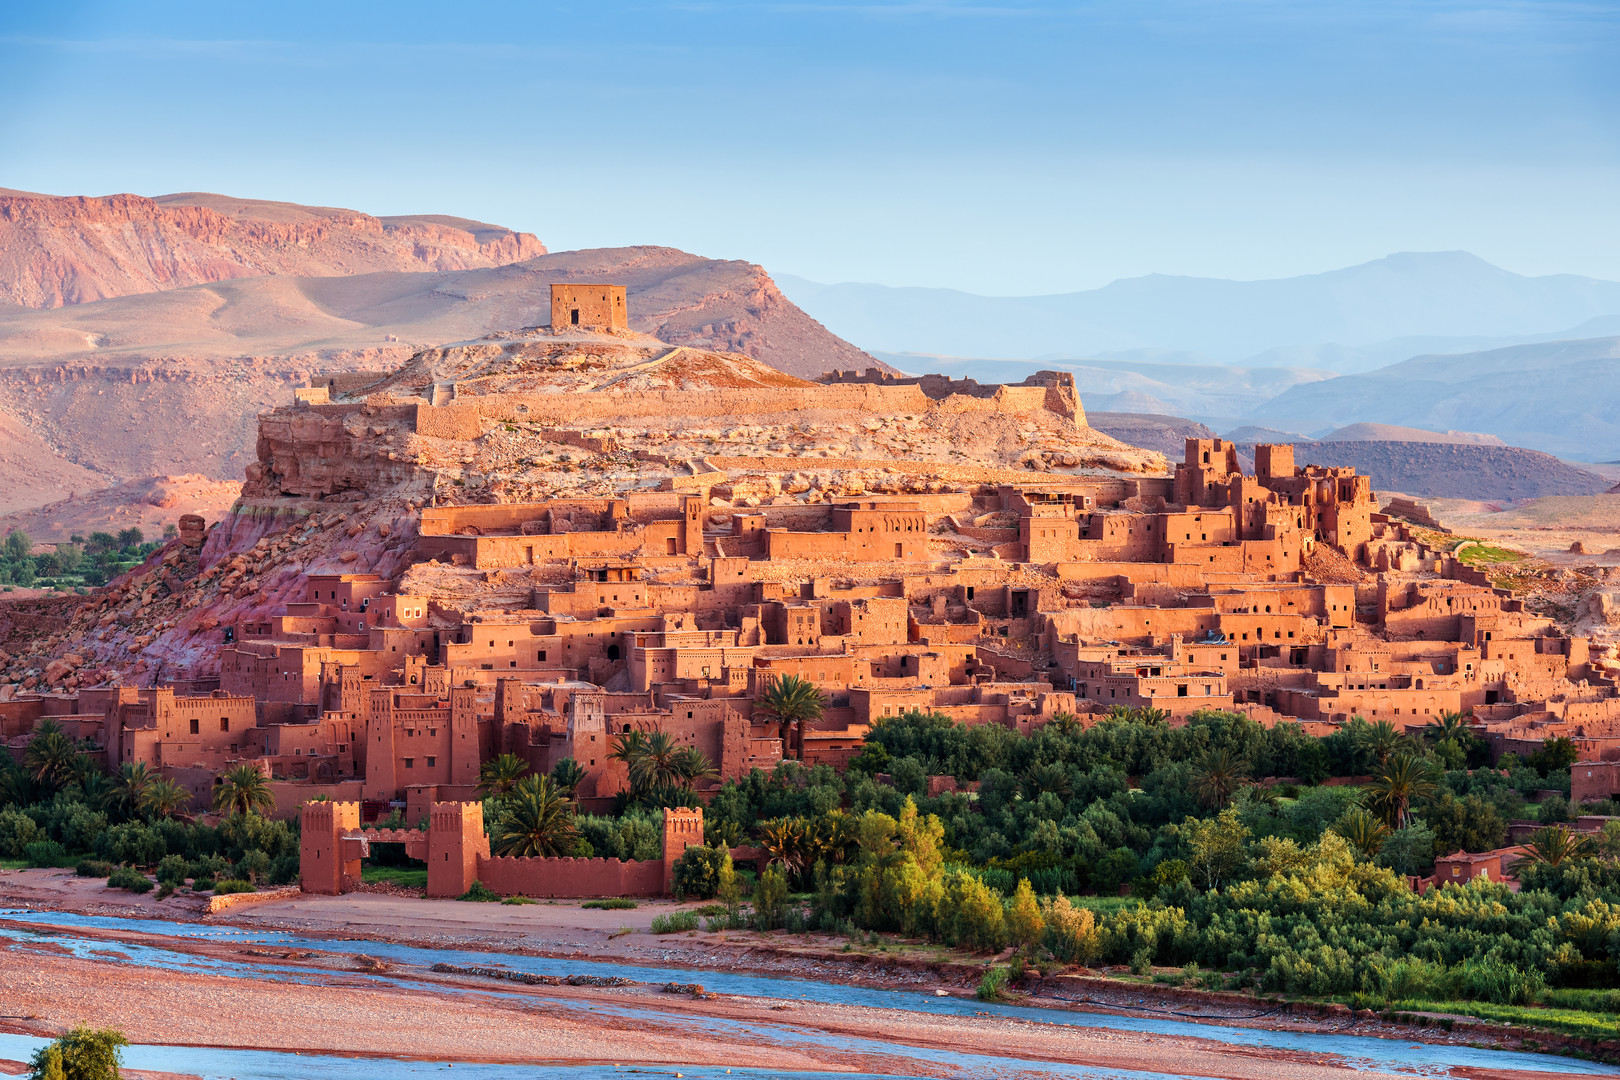 Obrázek hotelu To nejlepší z jižního Maroka